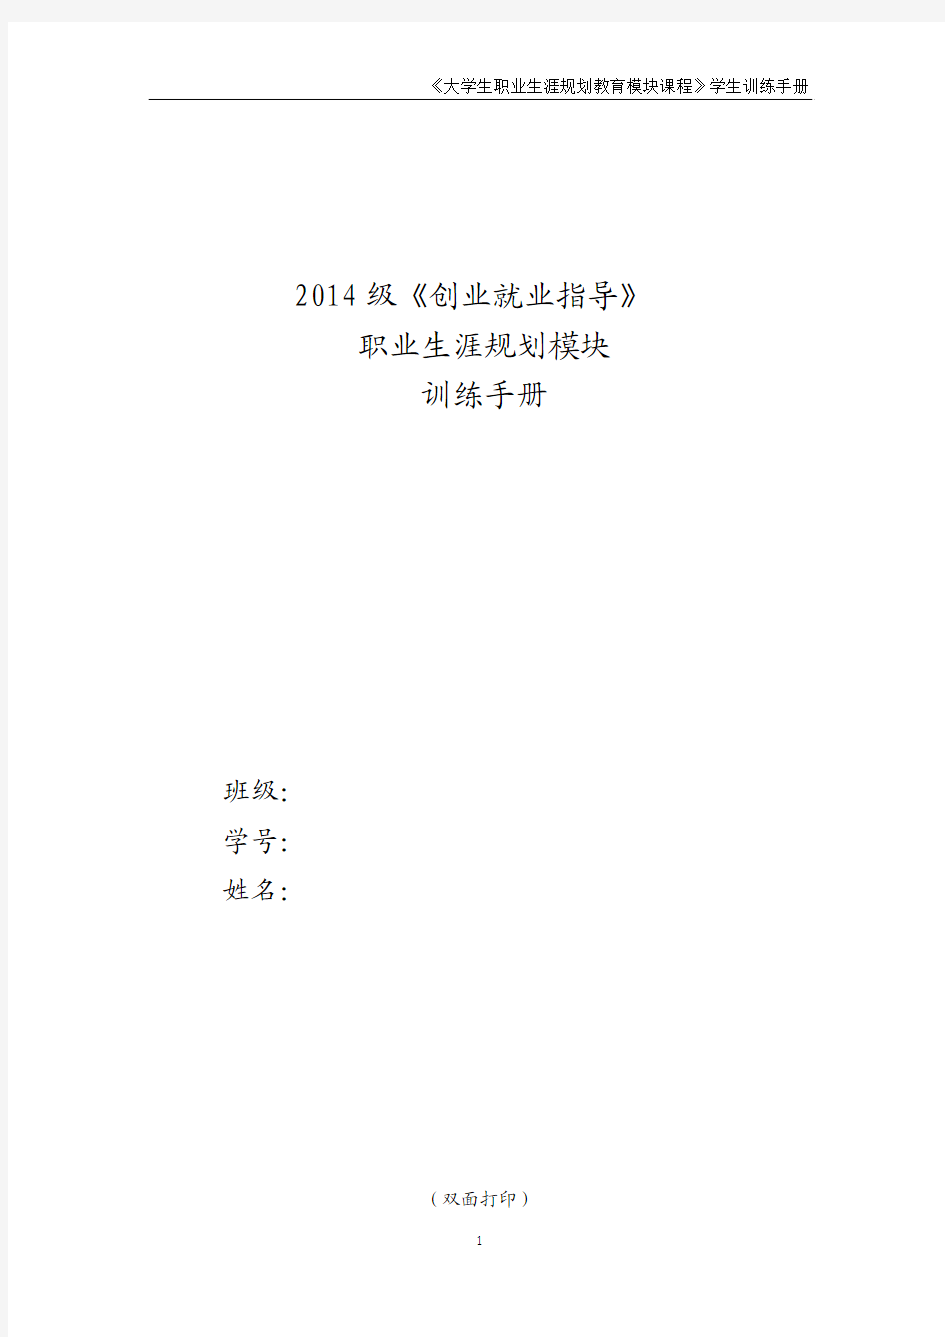 2014级职业生涯规划课程学生训练手册(0305)1